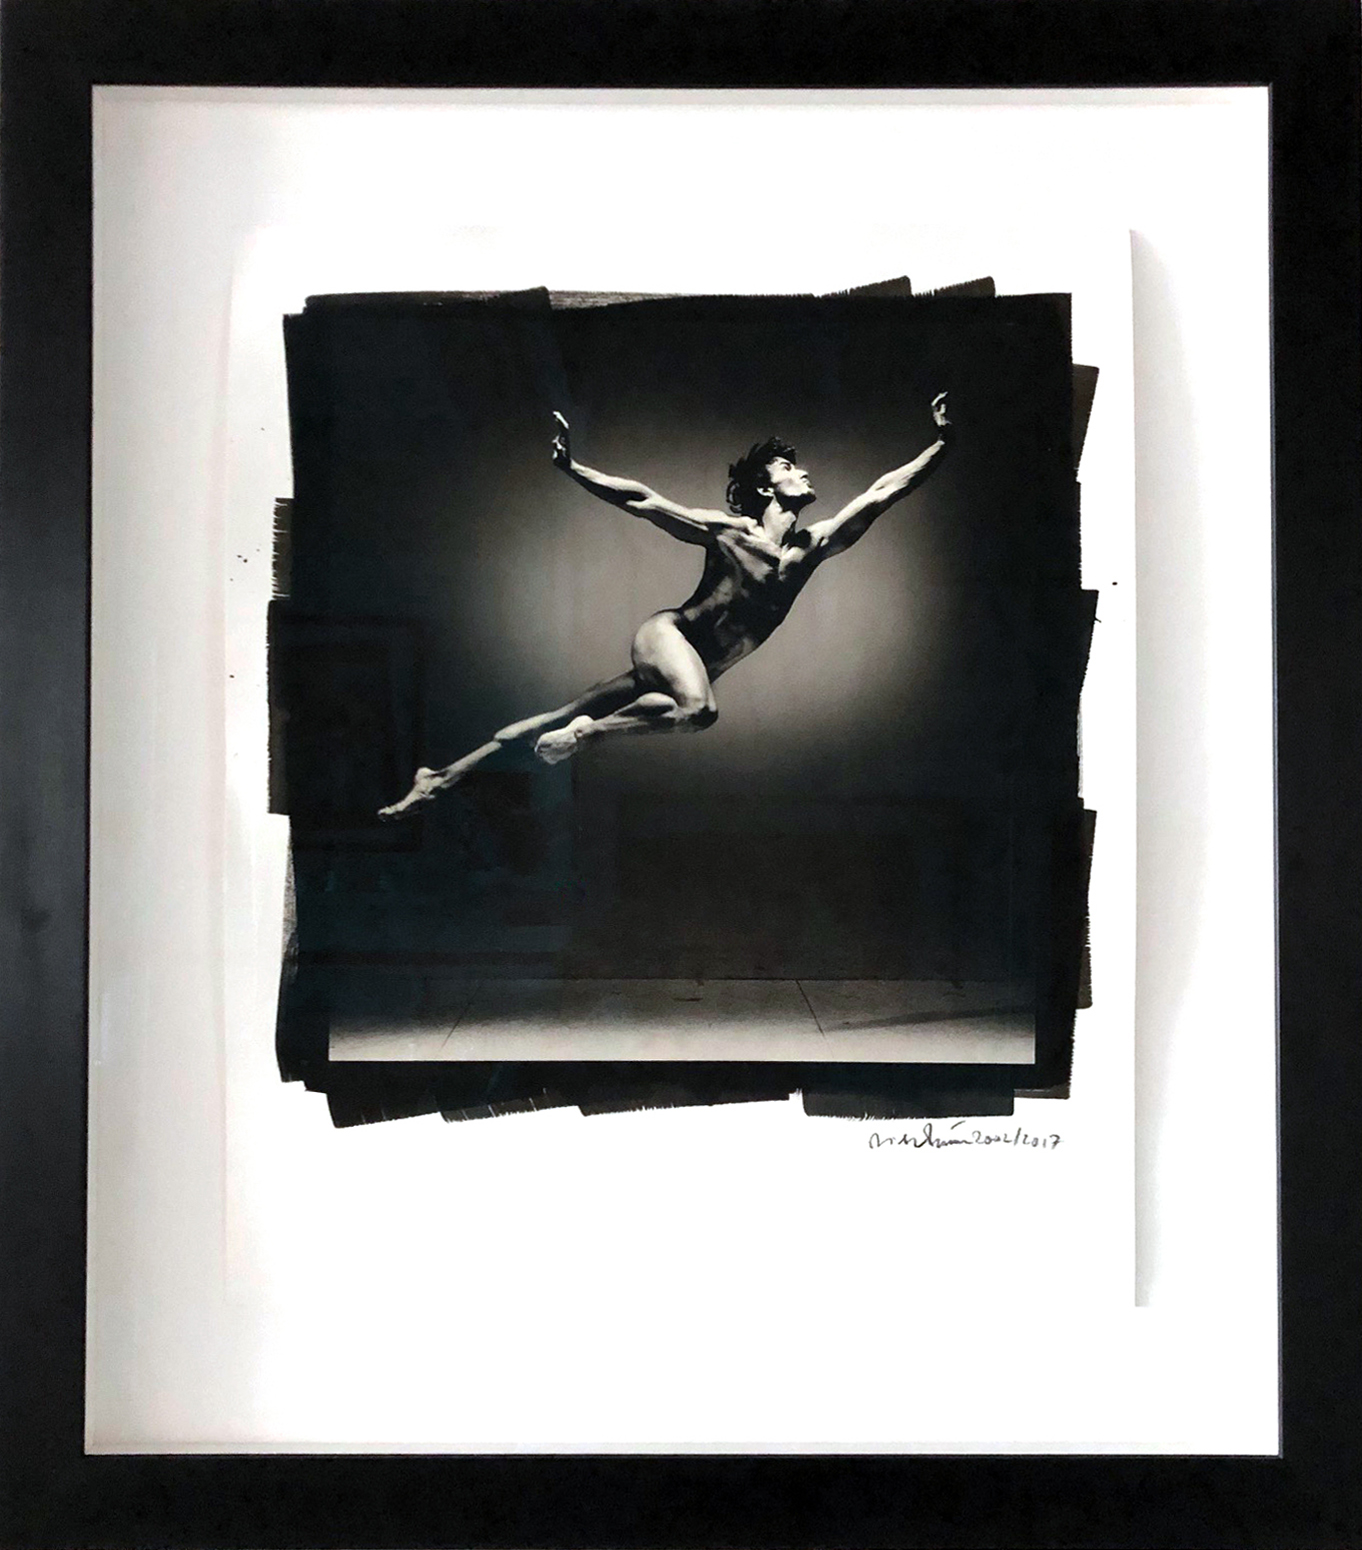 Dieter Blum Michelangelo 2002 Platinum Print 60 cm x 50 cm Distanzrahmen Holz schwarz inkl. Glasscheibe  85 cm x 75 cm x 4 cm Auflage: 1/6  Signatur auf Print Preis auf Anfrage